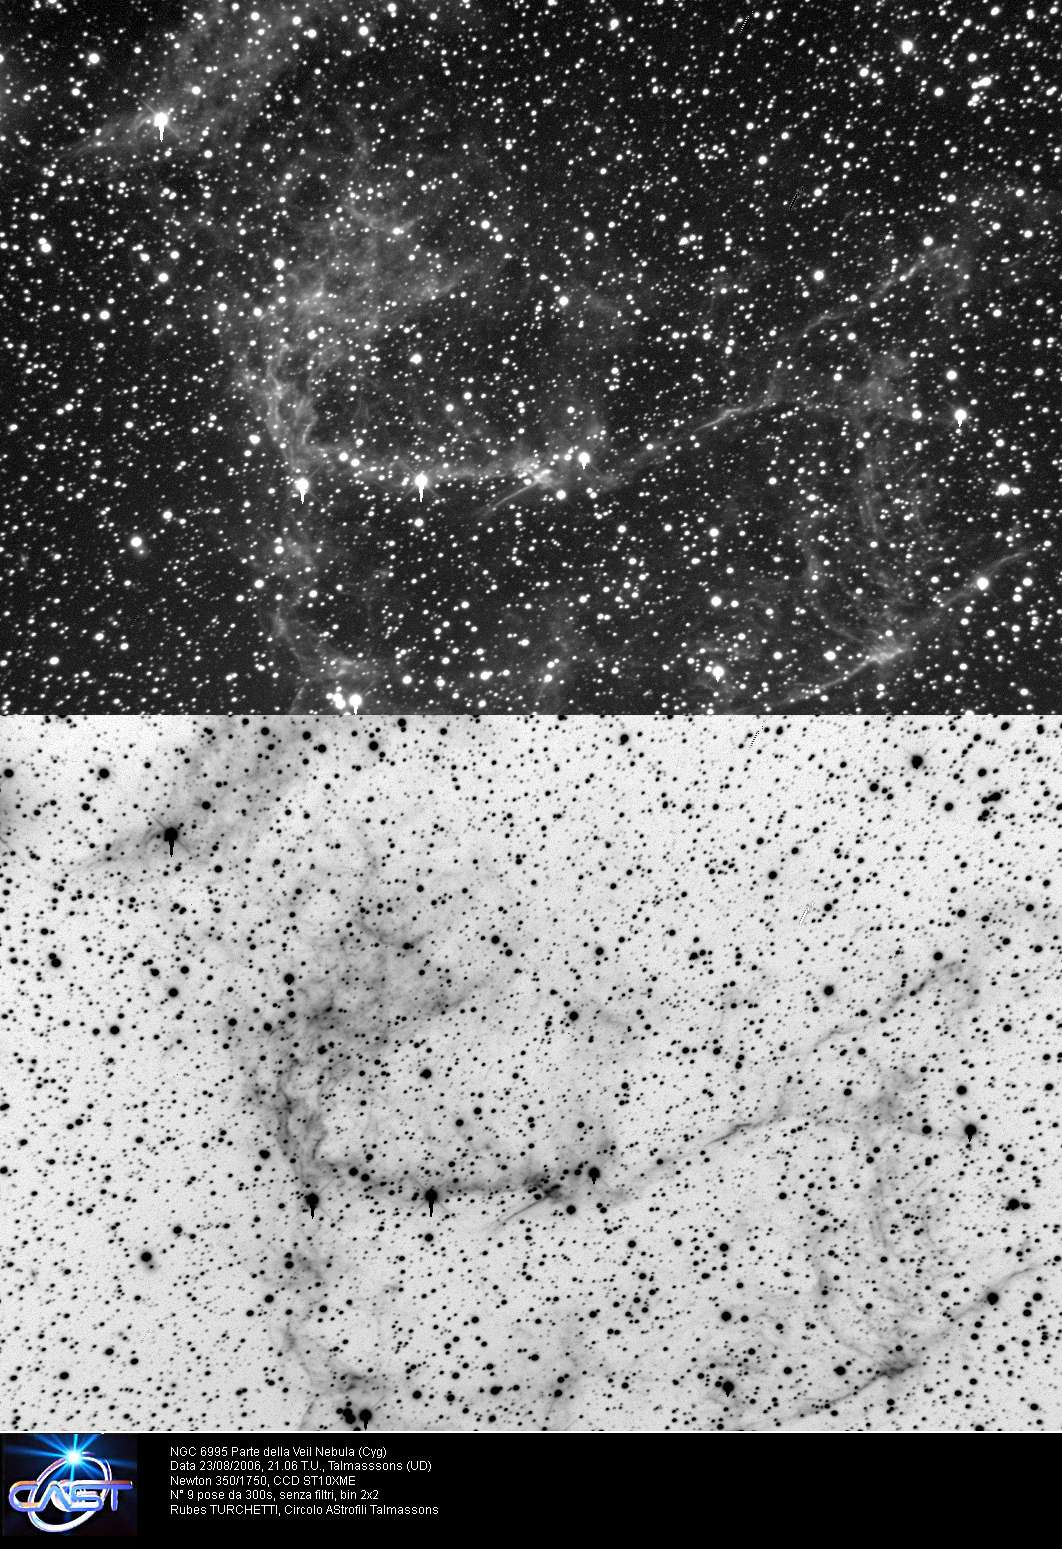 Velo nebula-NGC 6995: 288 KB; click on the image to enlarge